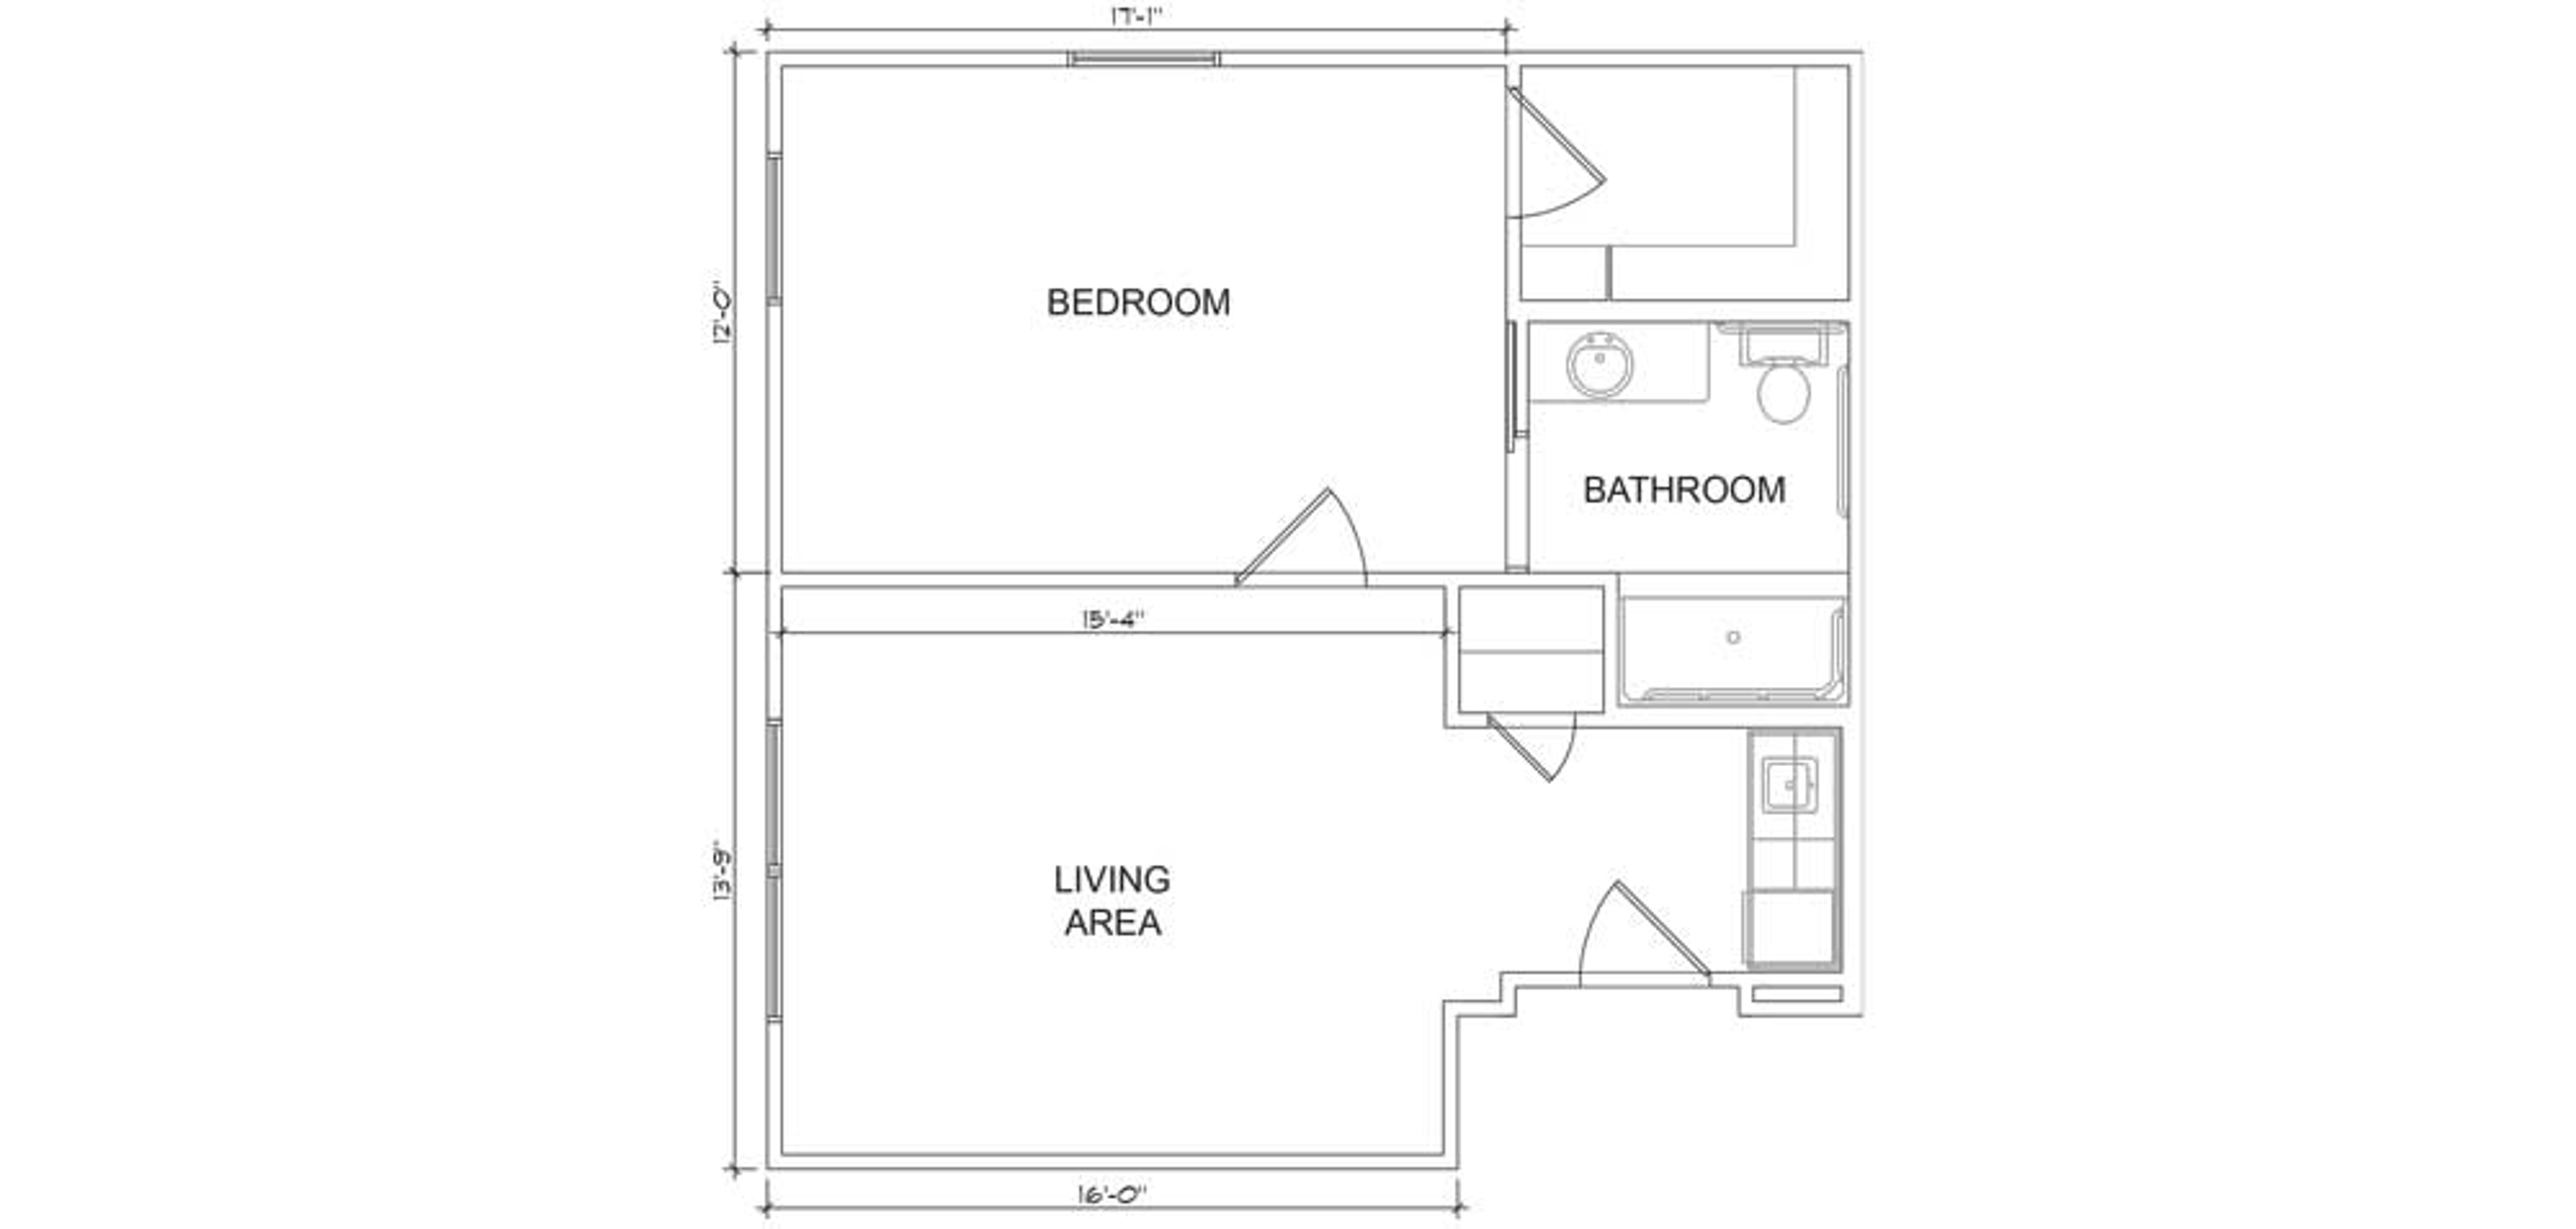 Floorplan - Heritage Oaks - 1B 1B Luxury AL